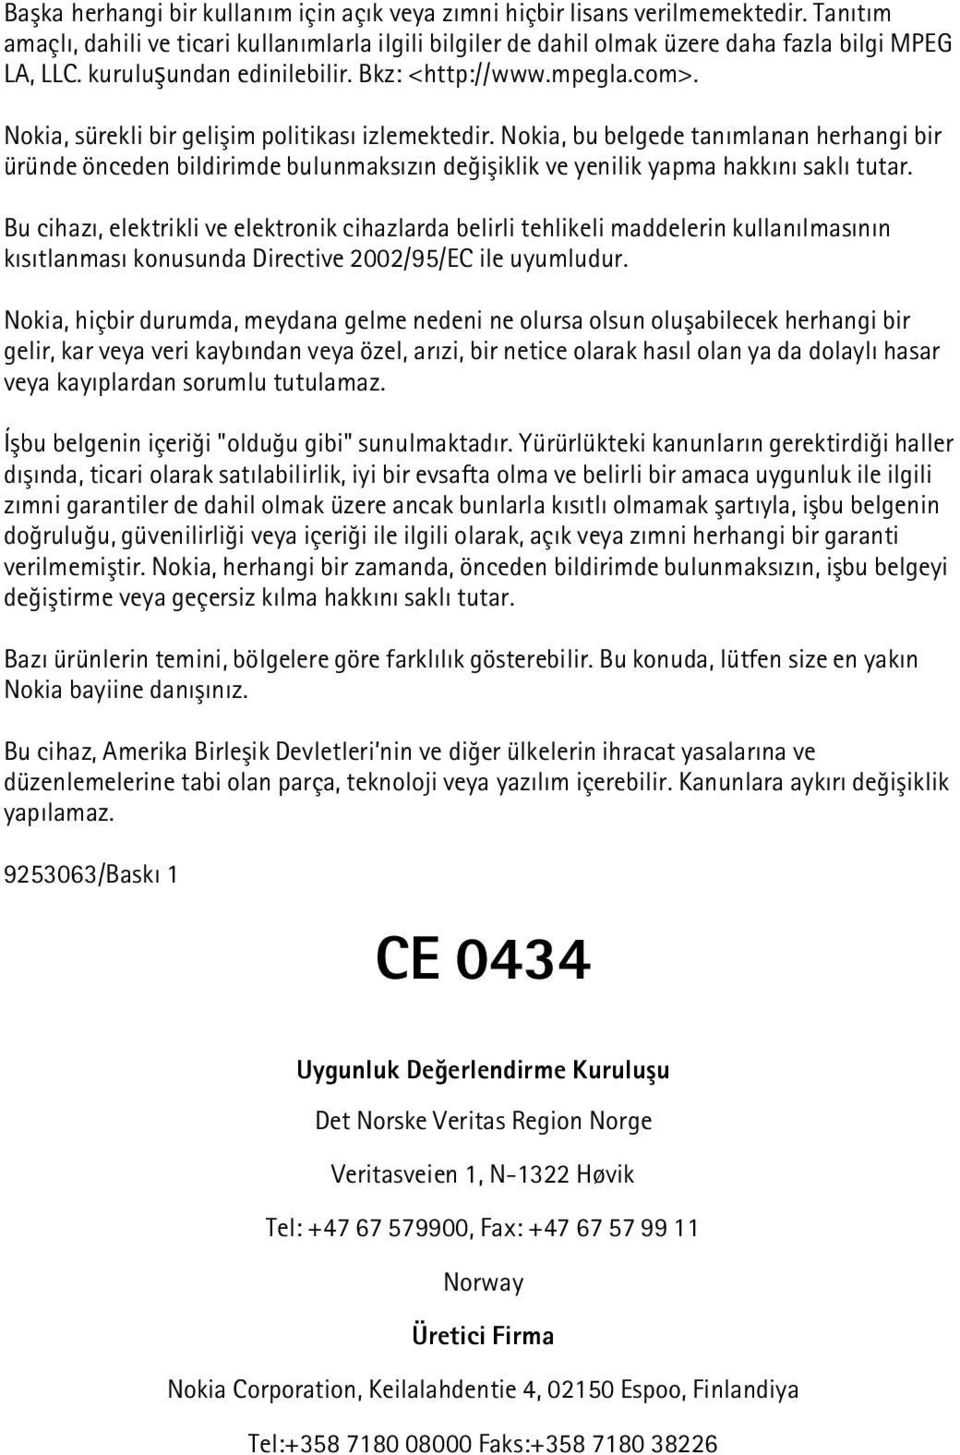 Nokia, bu belgede tanýmlanan herhangi bir üründe önceden bildirimde bulunmaksýzýn deðiþiklik ve yenilik yapma hakkýný saklý tutar.